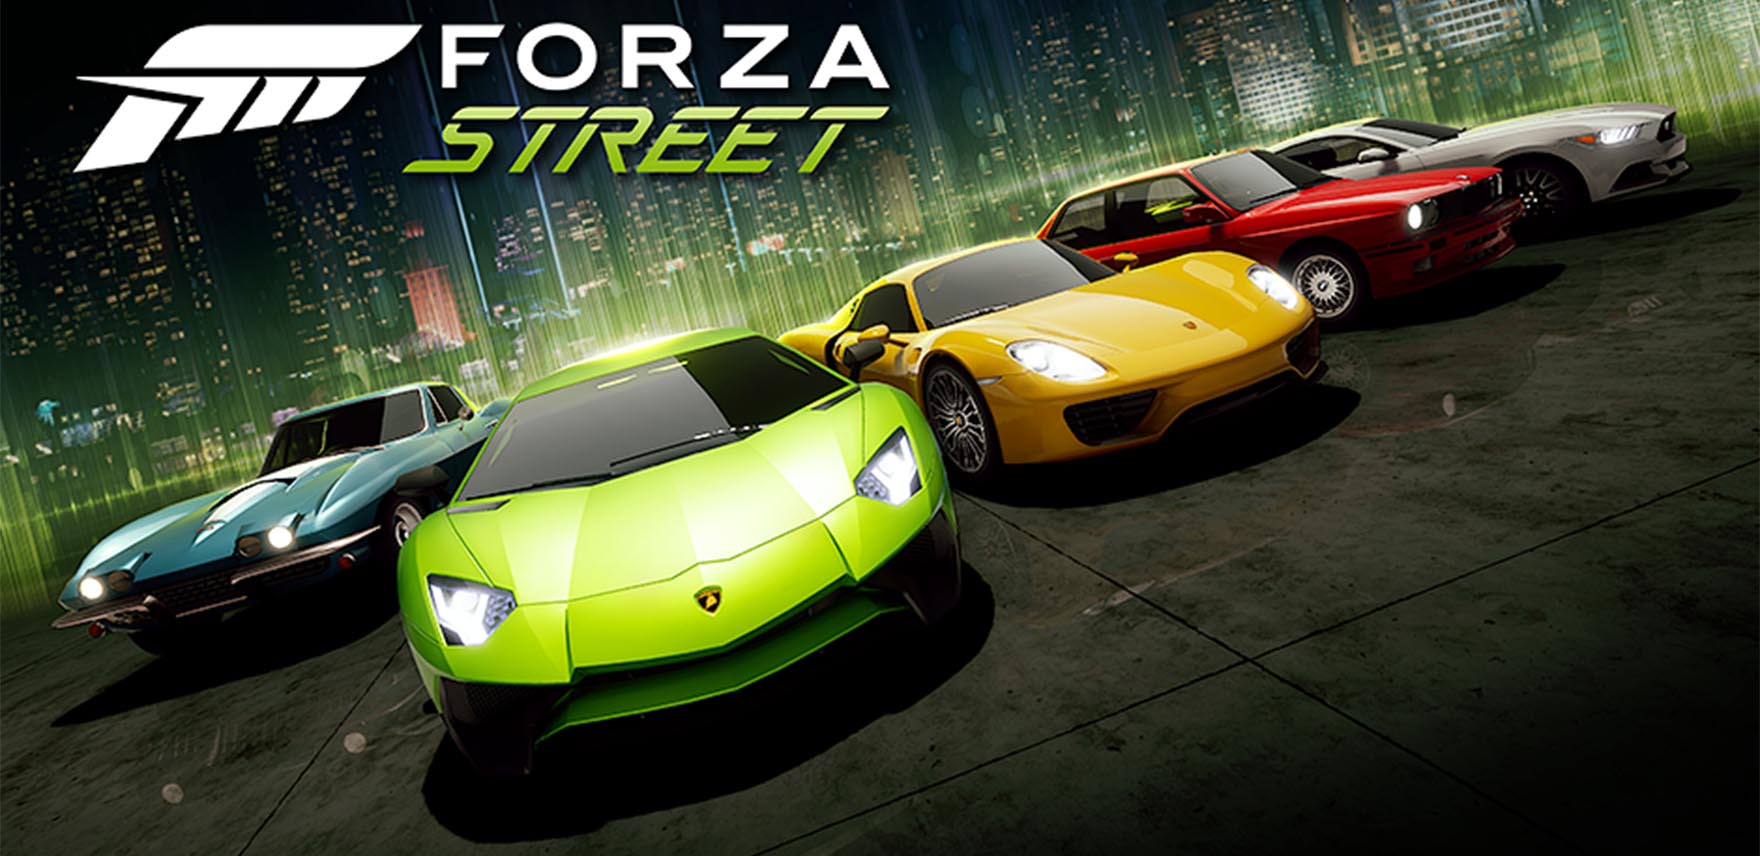 Forza Street autos